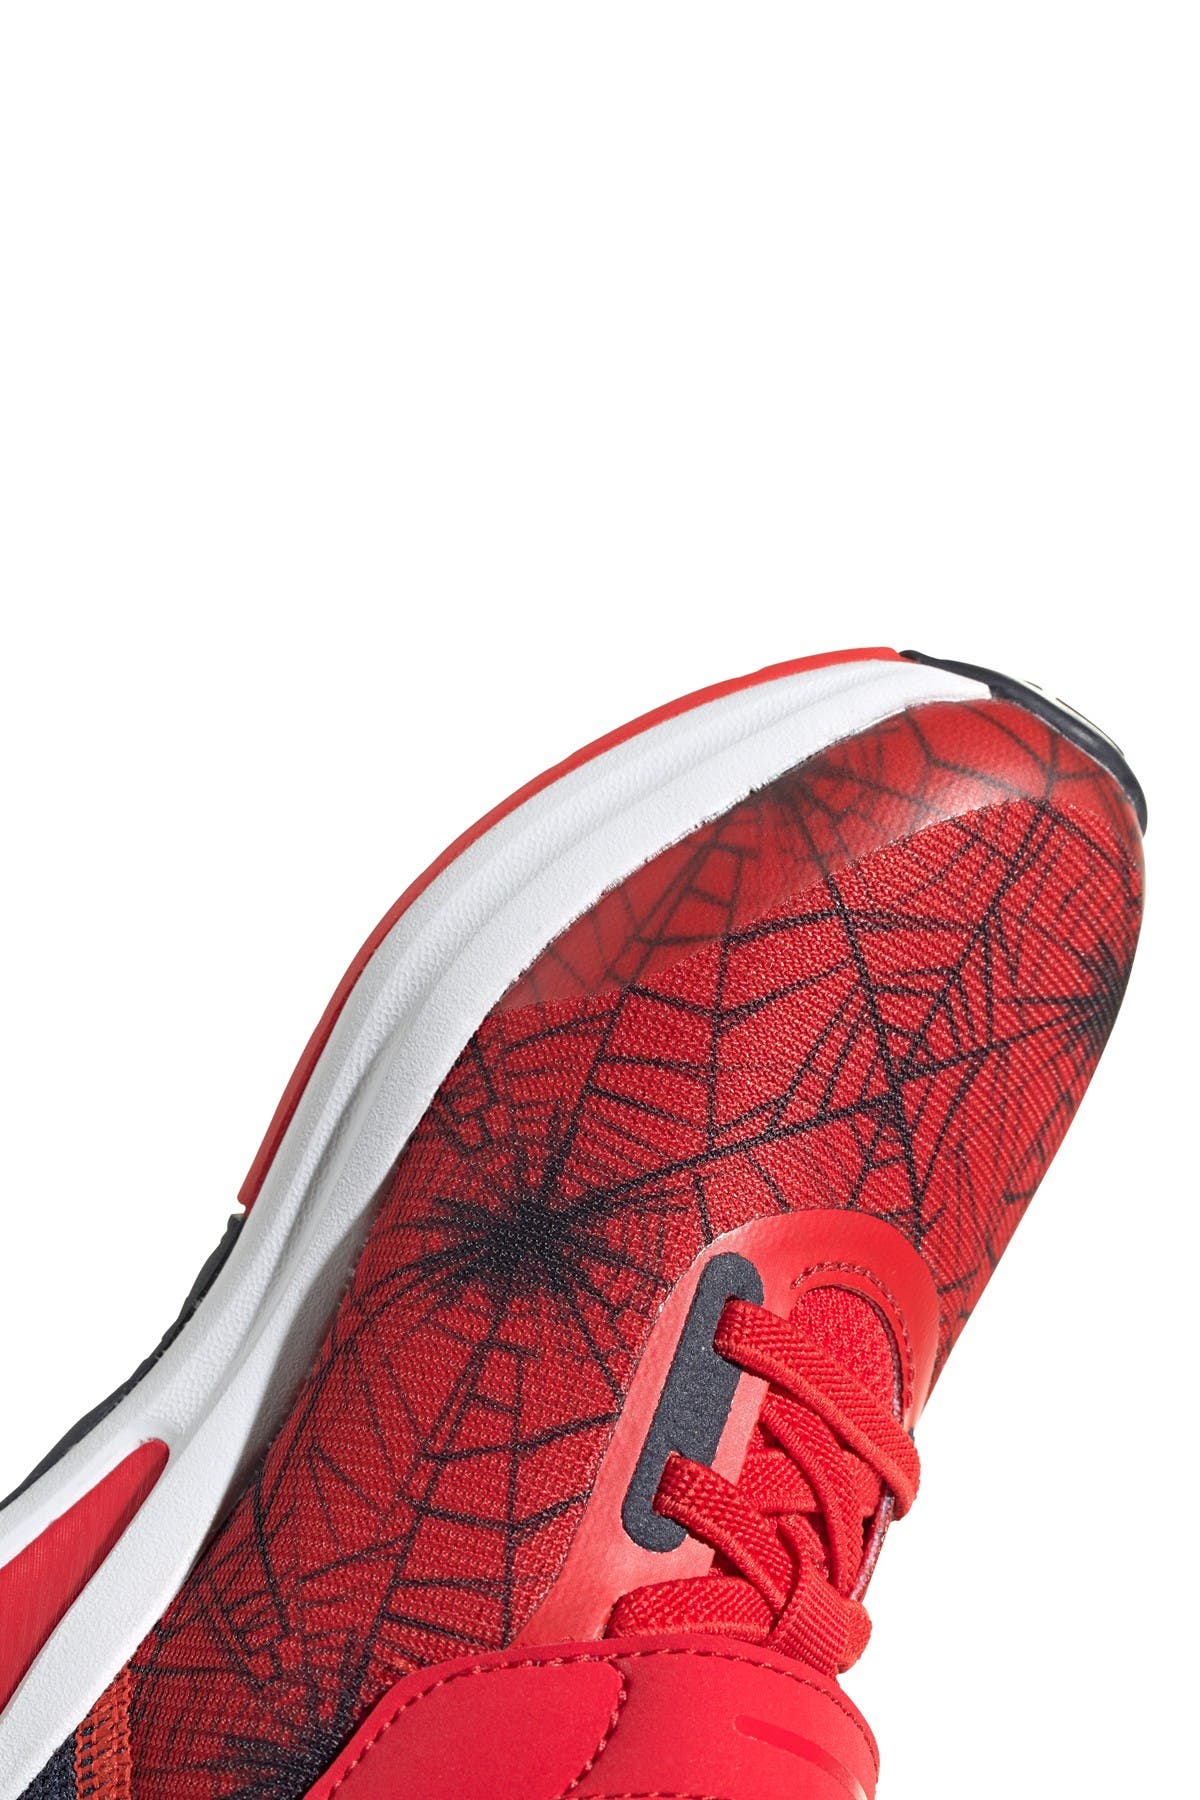 adidas marvel spider man